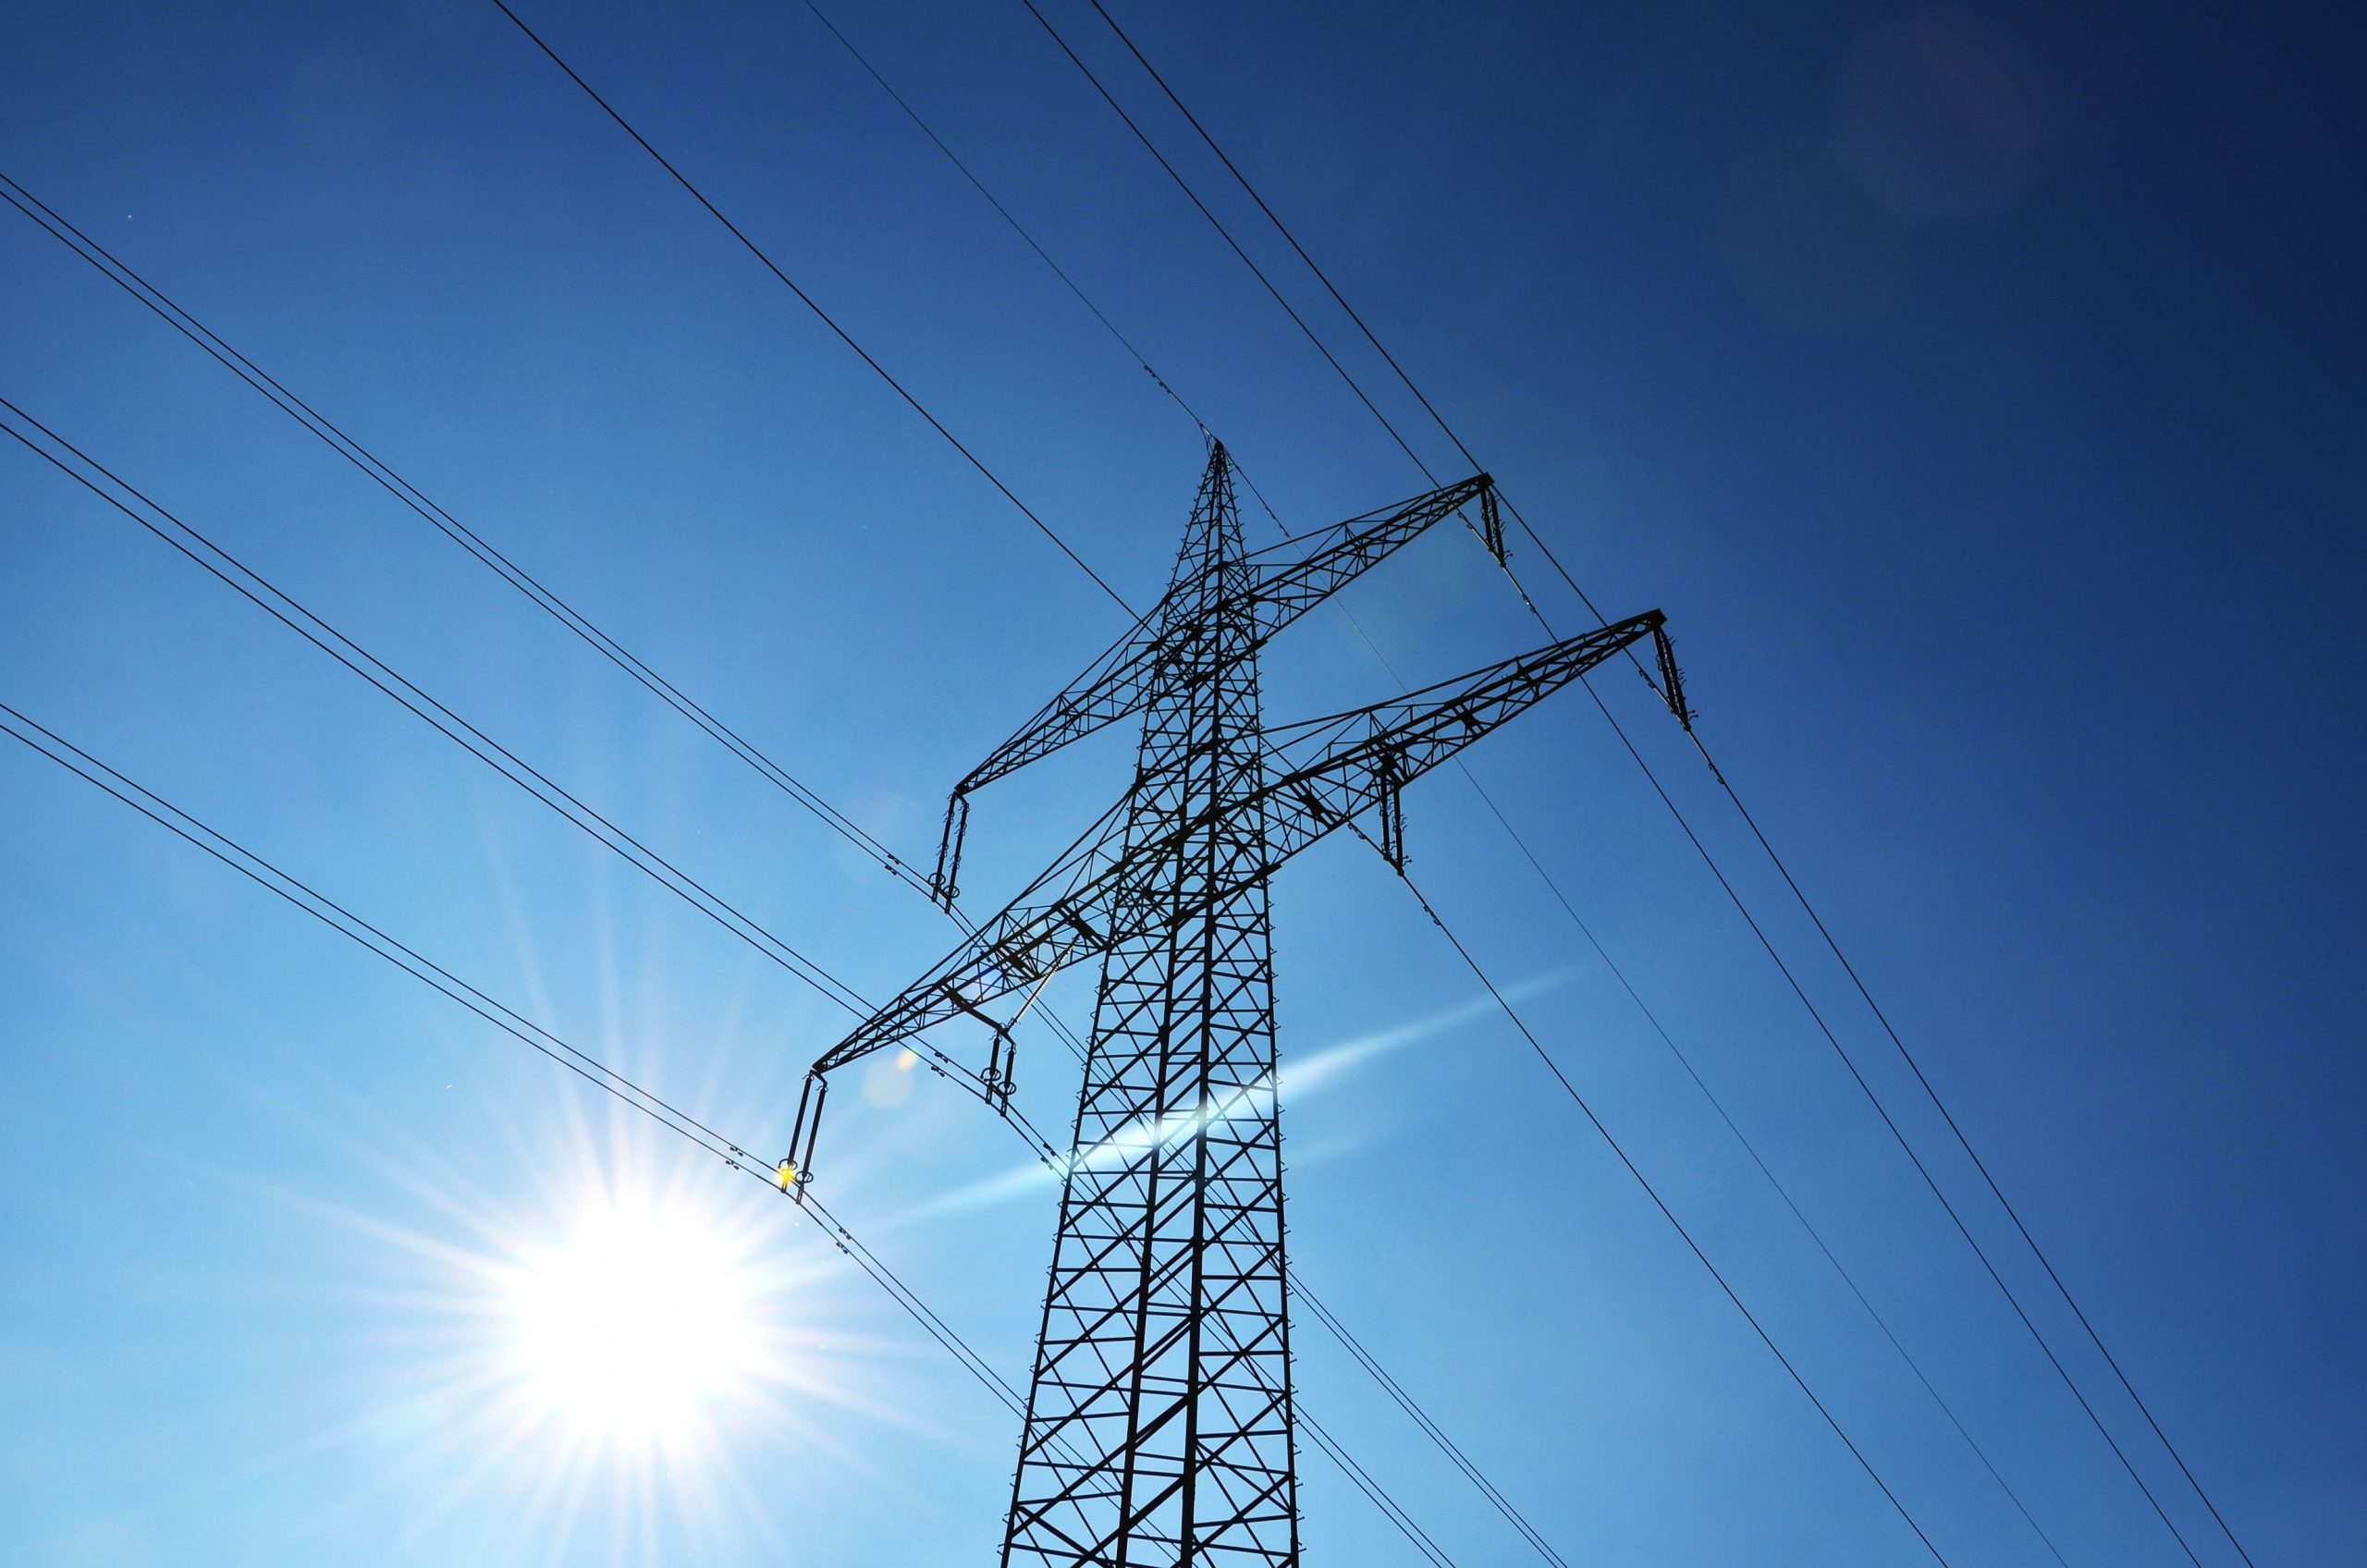 WebKonferenz informiert über Stromvermarktung durch Power Purchase Agreements